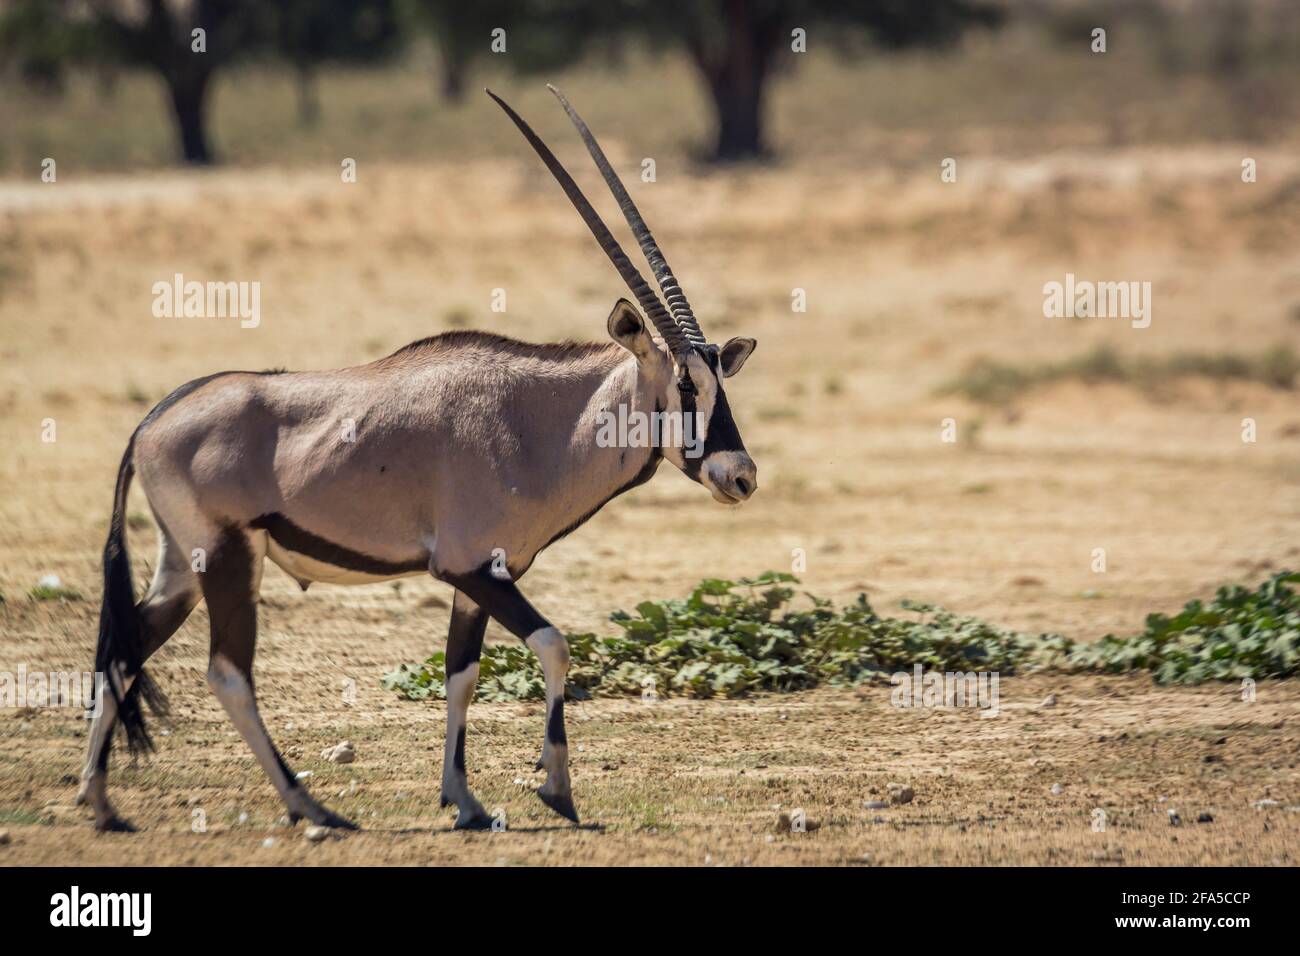 Vue latérale de marche de l'Oryx d'Afrique du Sud en terre sèche dans le parc transfrontier de Kgalagadi, Afrique du Sud; espèce de la famille des Bovidae Oryx gazella Banque D'Images